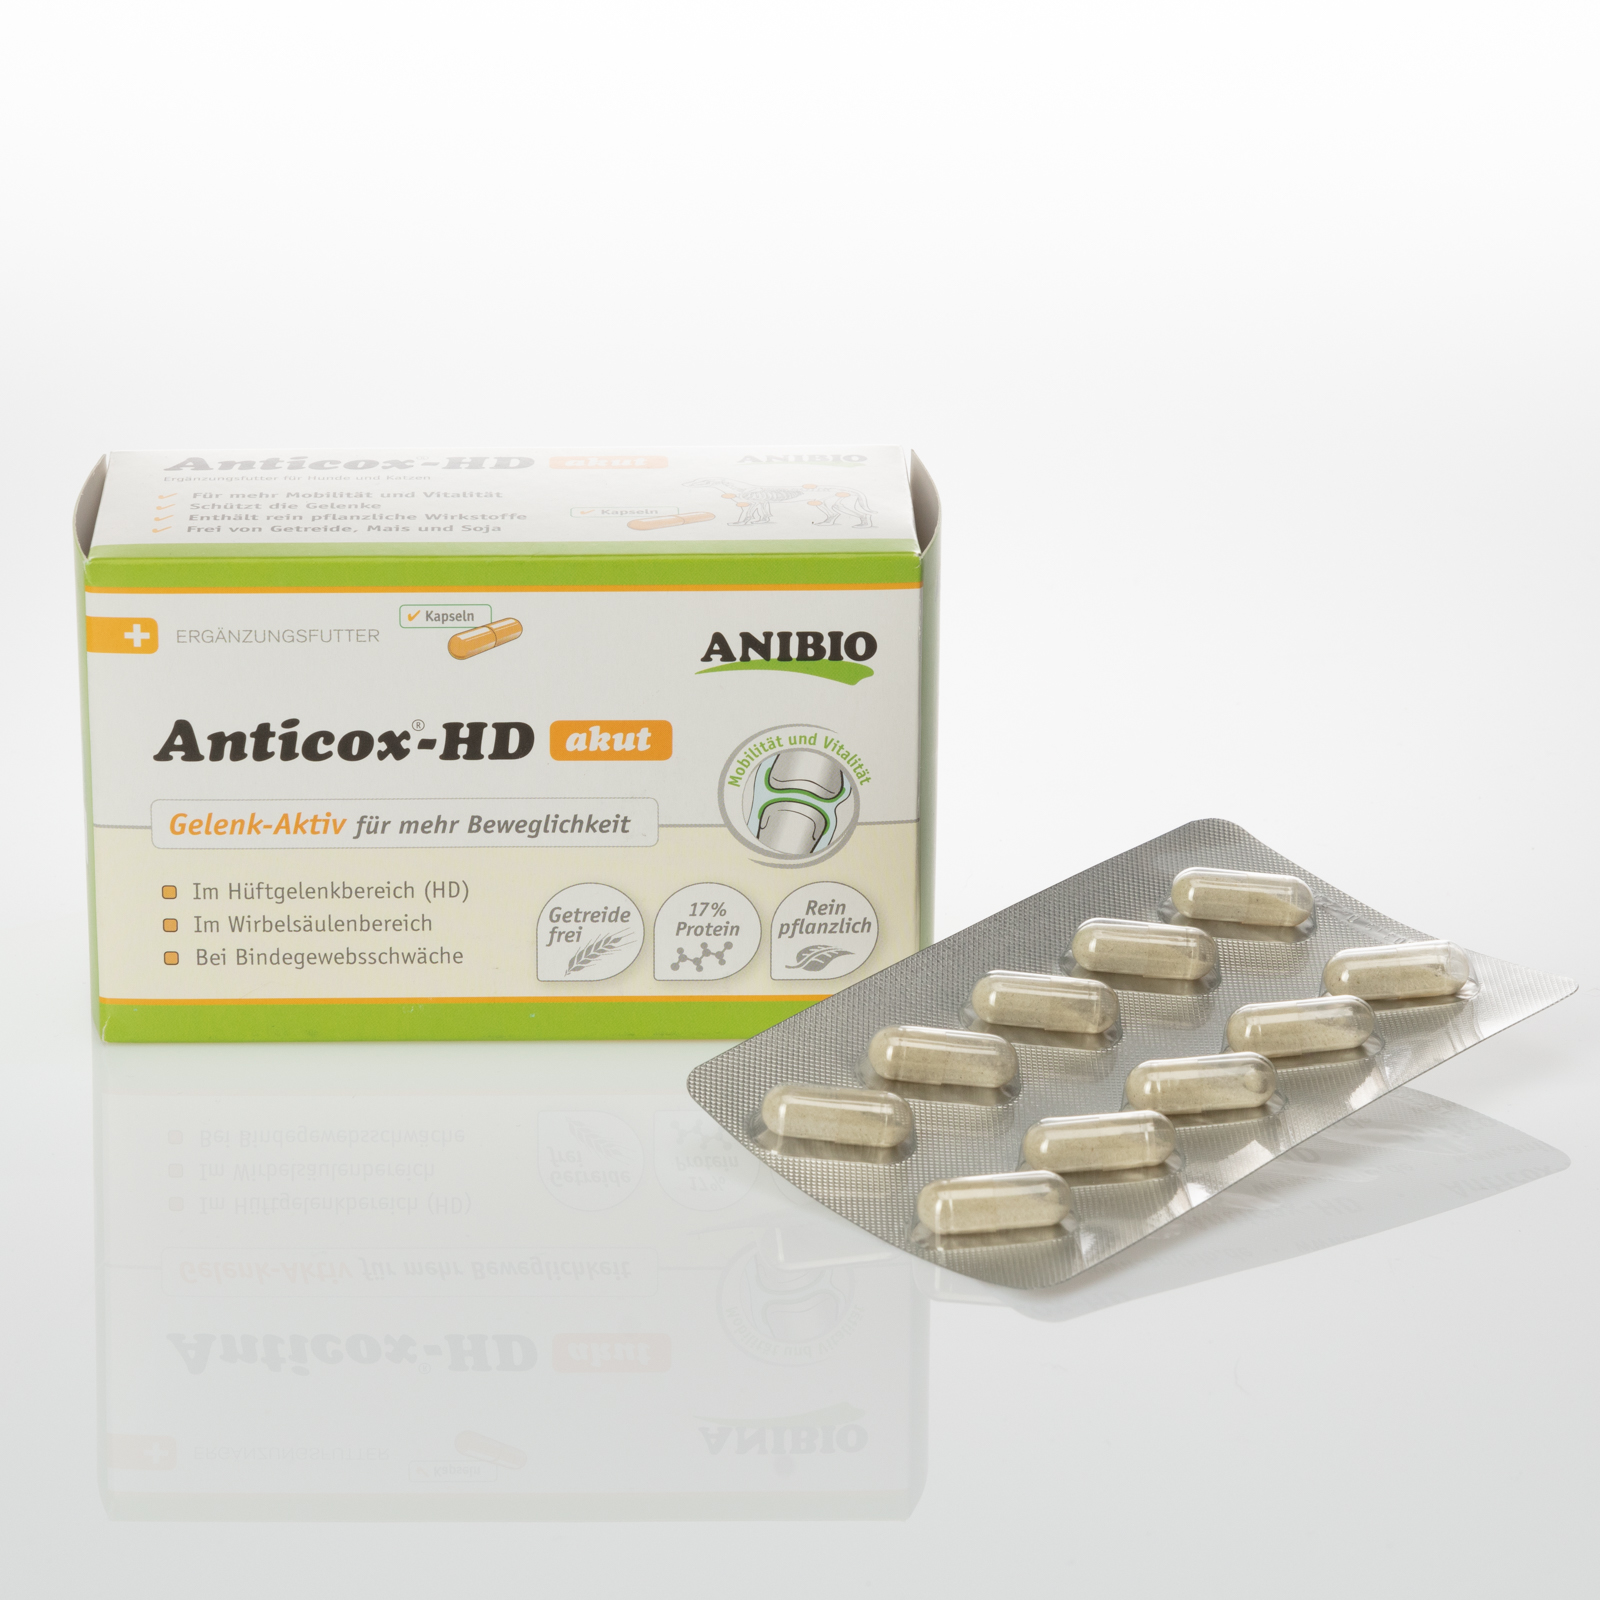 ANIBIO Anticox-HD - 50 Gelenk -Aktiv mehr Beweglichkeit for Dogs & Cats